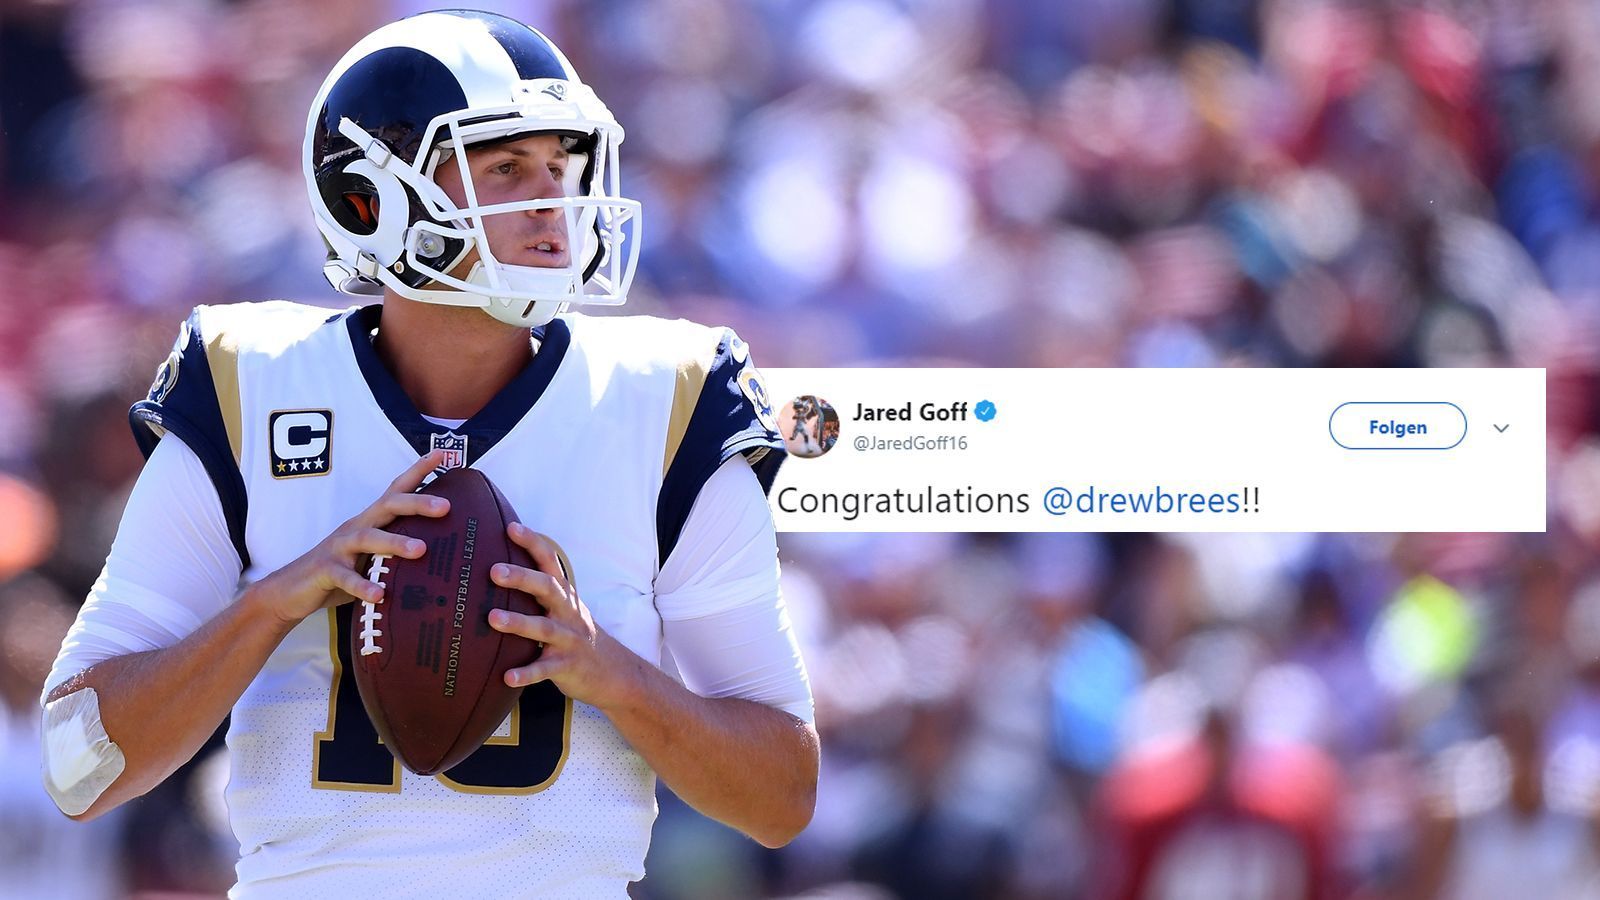 
                <strong>Jared Goff </strong><br>
                Der Quarterback der Los Angeles Rams war etwas nüchterner. "Gratulation", schrieb er. 
              